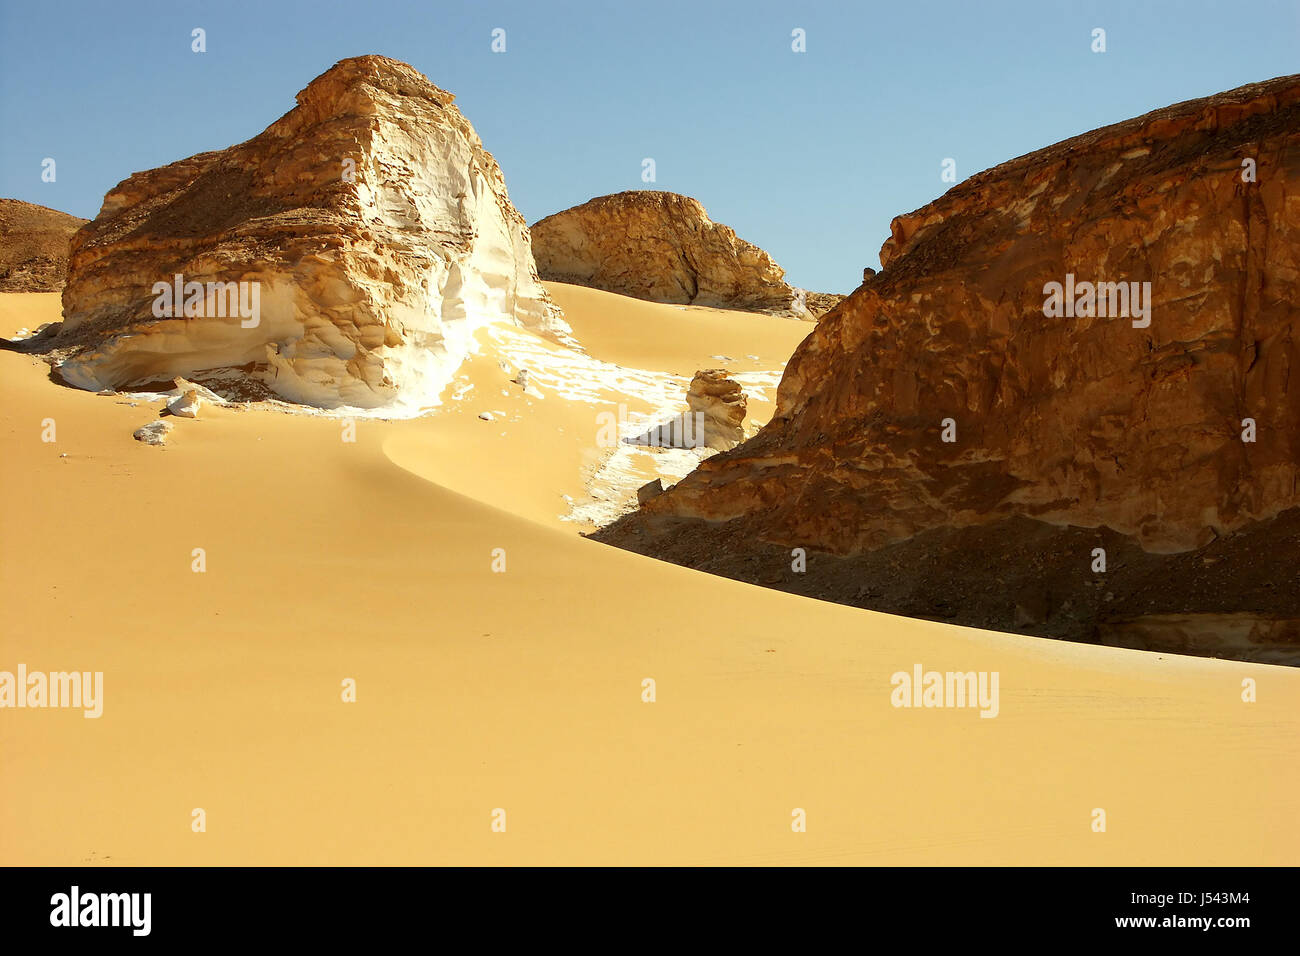 Ägypten-Biegung Düne Kreidung Felsen Kreide Sand Sand Goldfarbig Weiss Weisse wste Stockfoto